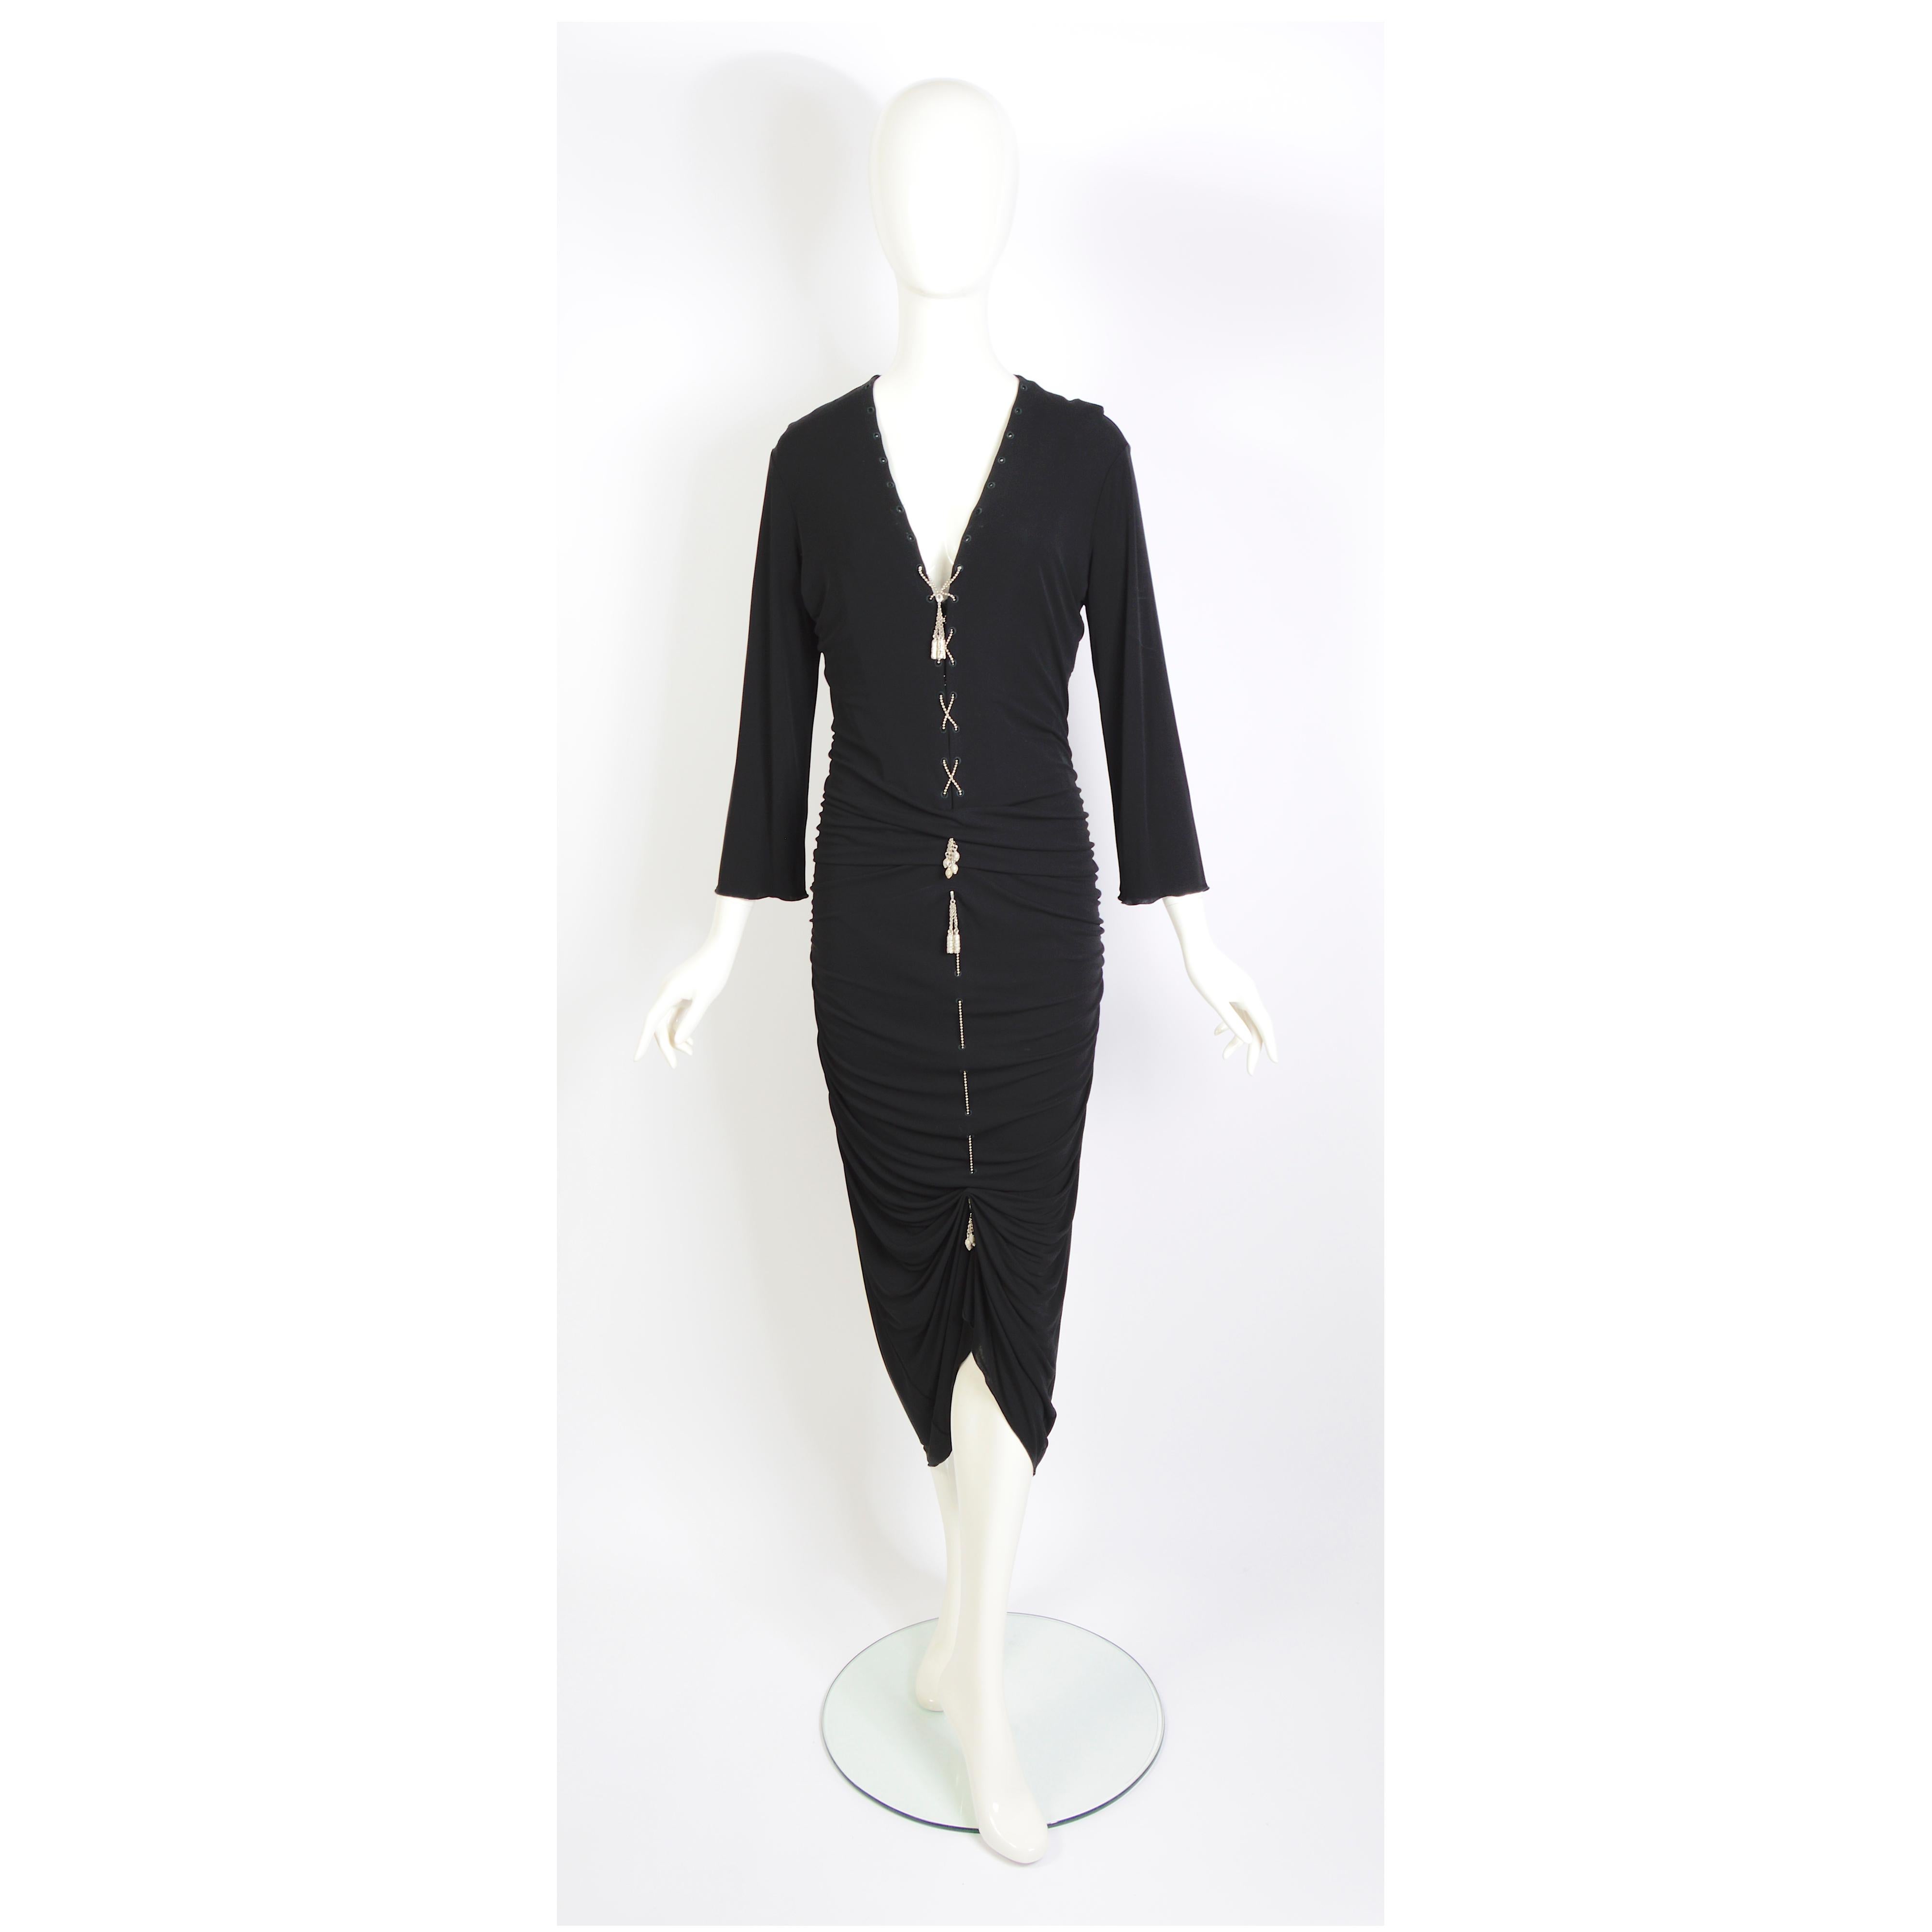 Jean Paul Gaultier 1990 vintage robe en jersey noir drapé semi-éclatant à lacets et chaîne en métal ornée de pompons. 
Une doublure en soie noire a été ajoutée mais peut être facilement retirée.
Label de taille :  USA 12 - France 42 - GB 14 - Italie